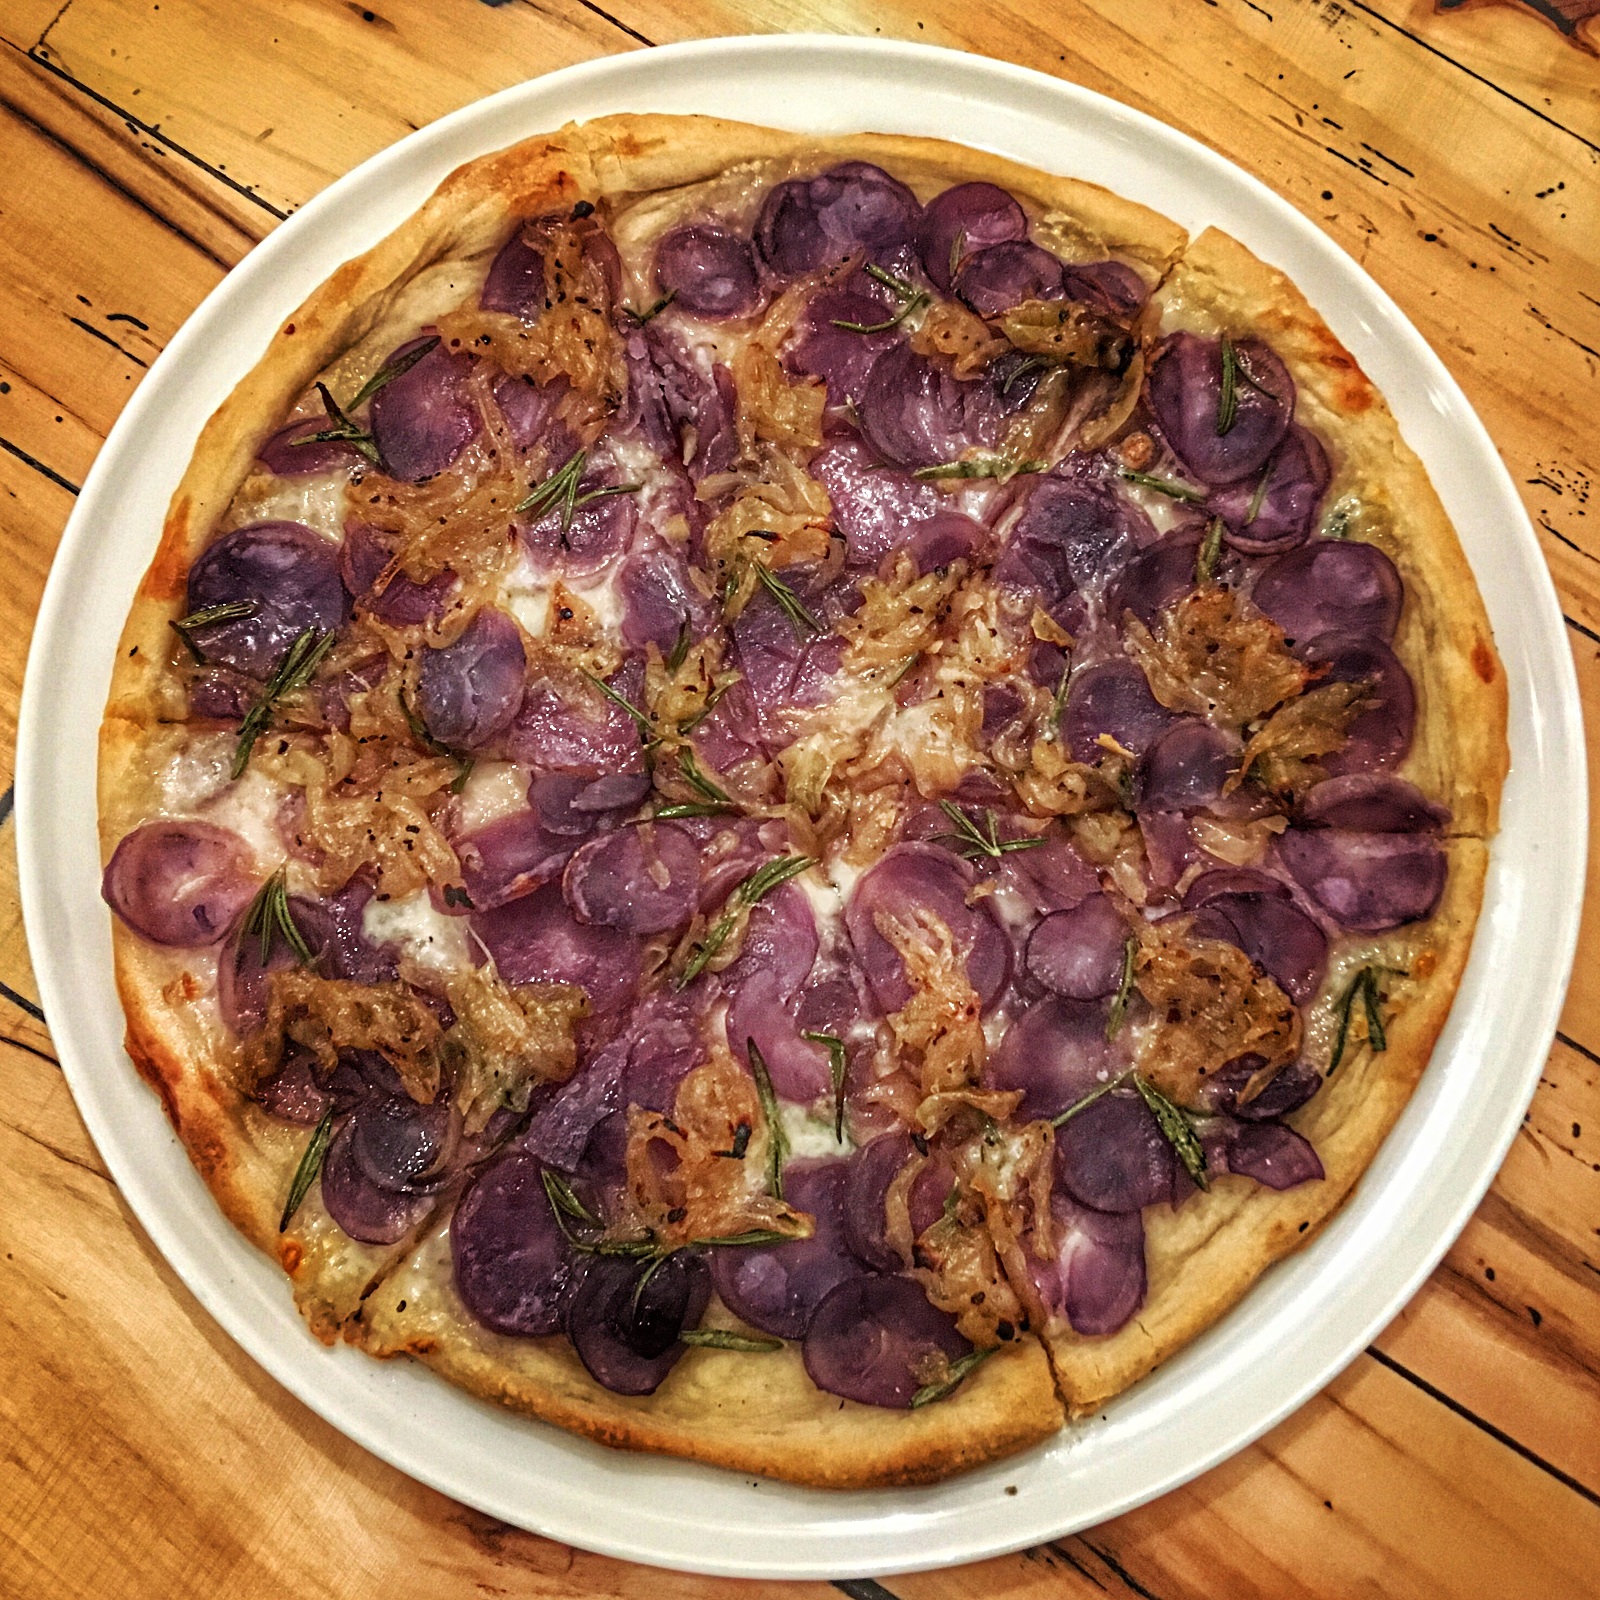 Fioletowe jedzenie: fioletowa pizza ze słodkimi ziemniakami (Cucciolina - pizza australijska)